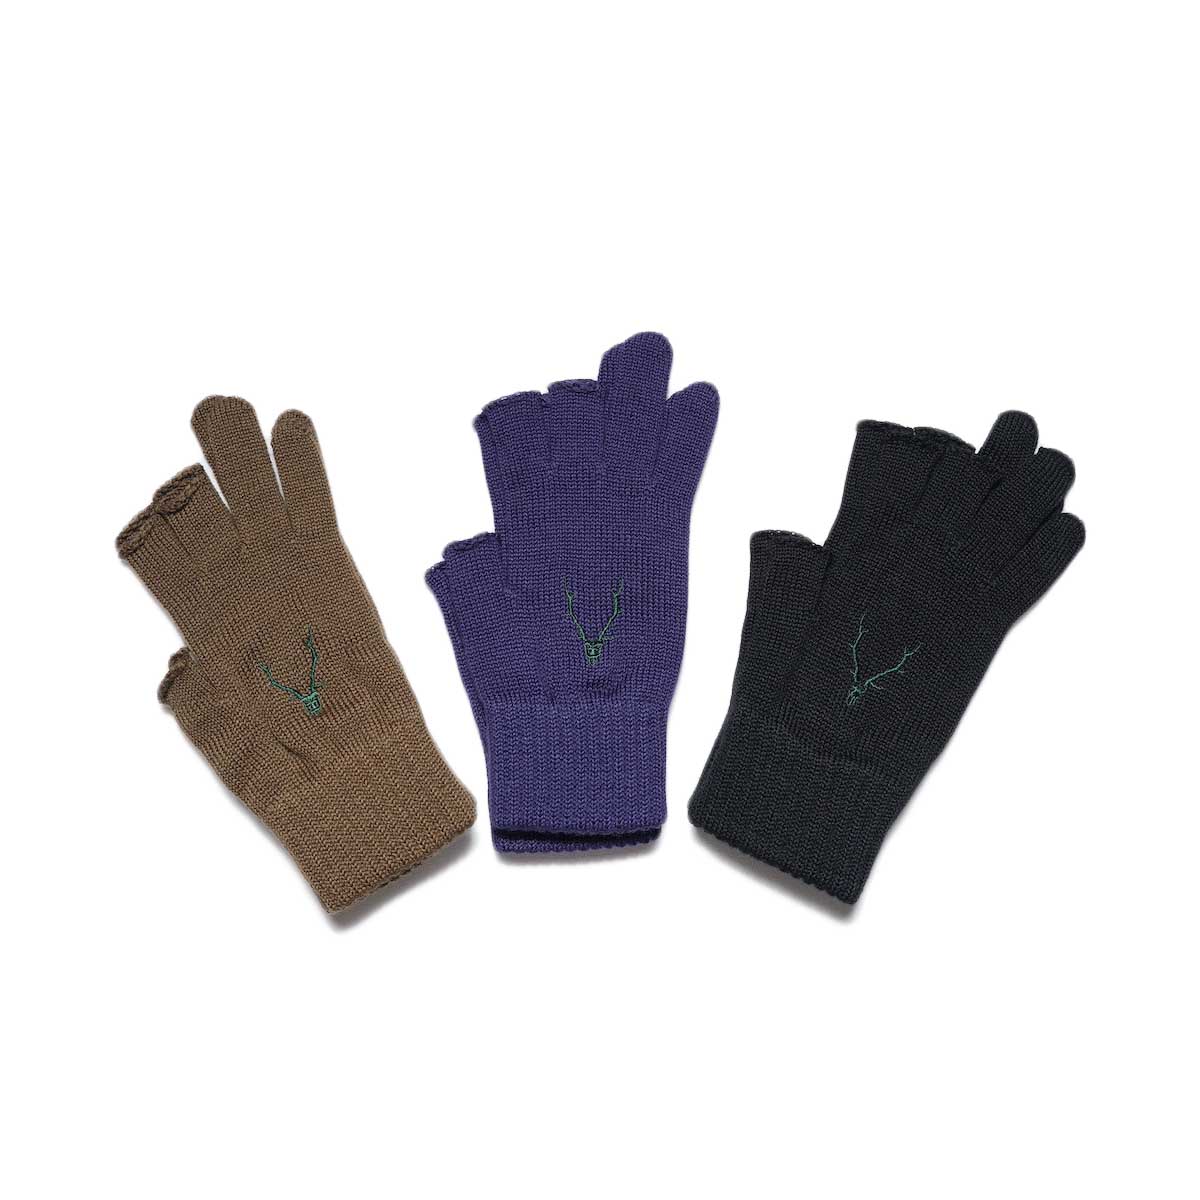 South2 West8 / Glove - W/A Knit